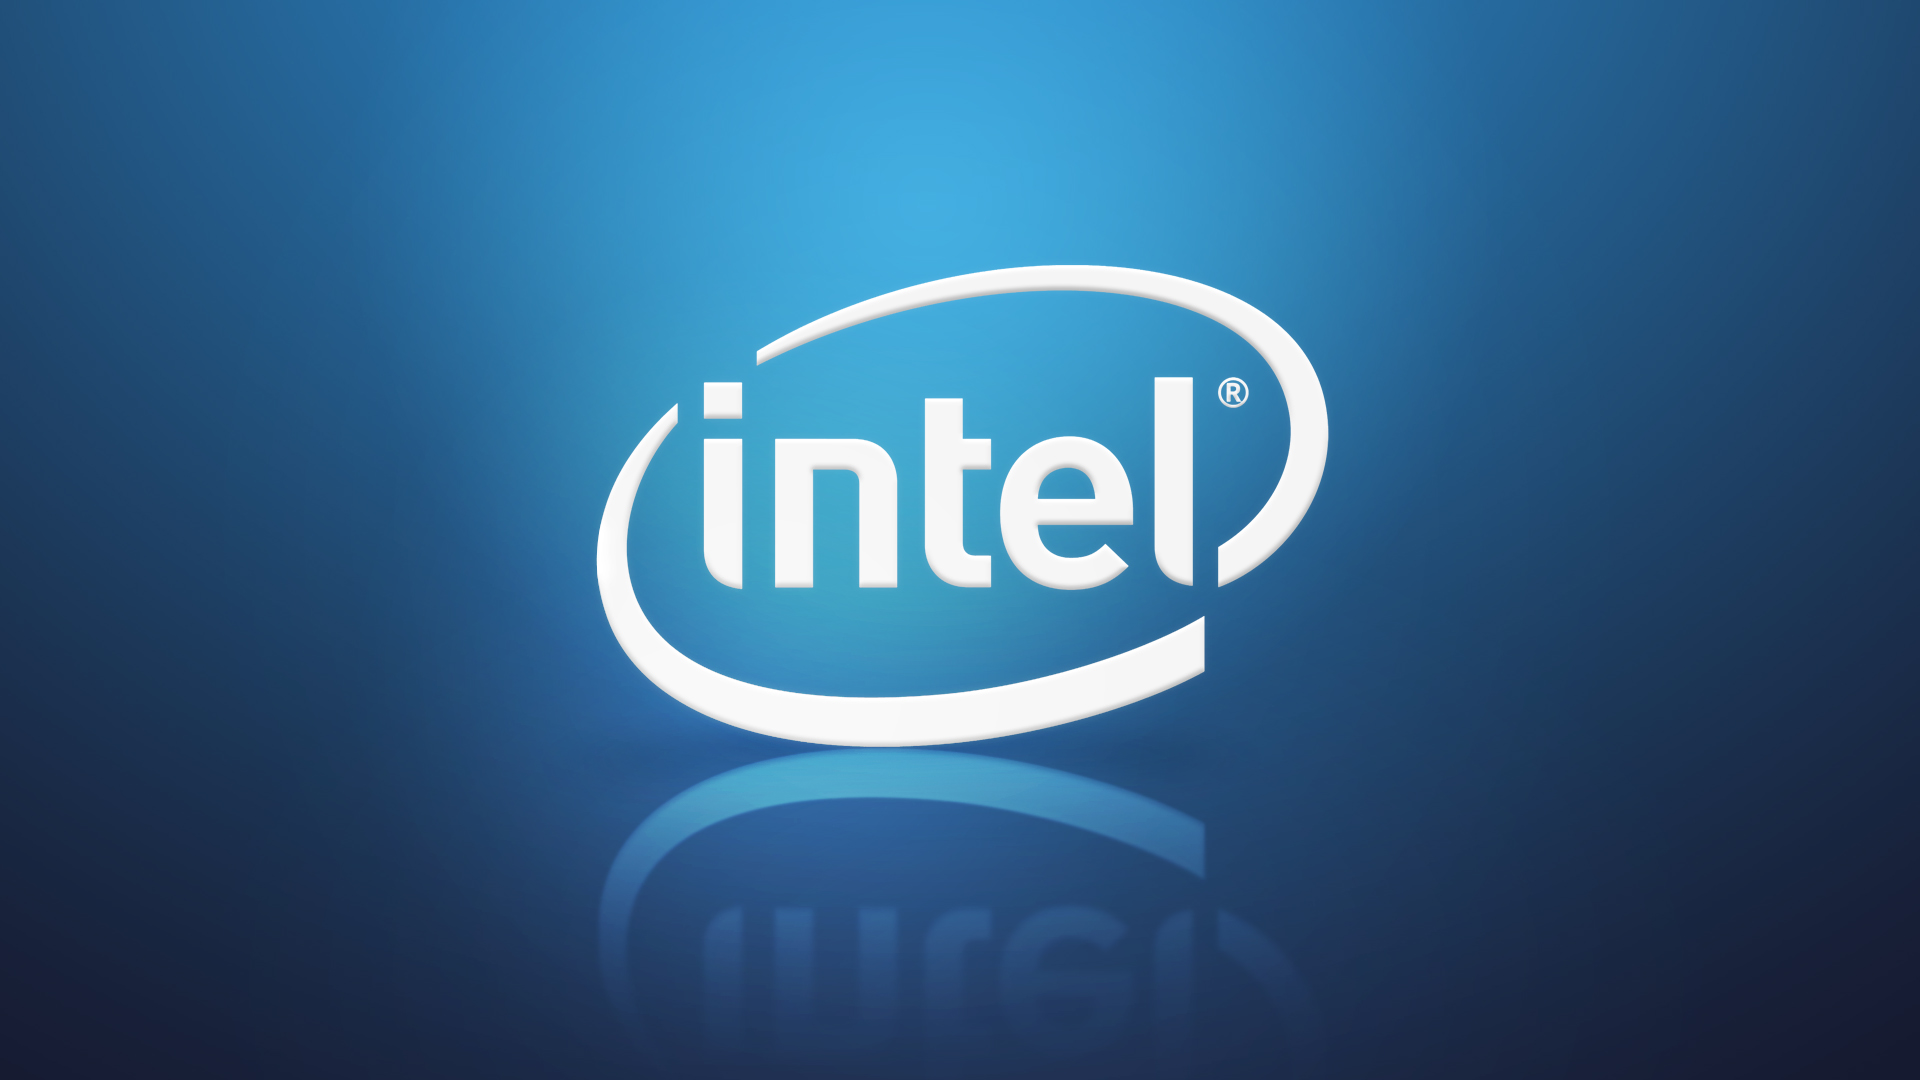 Intel Logo Wallpaper On